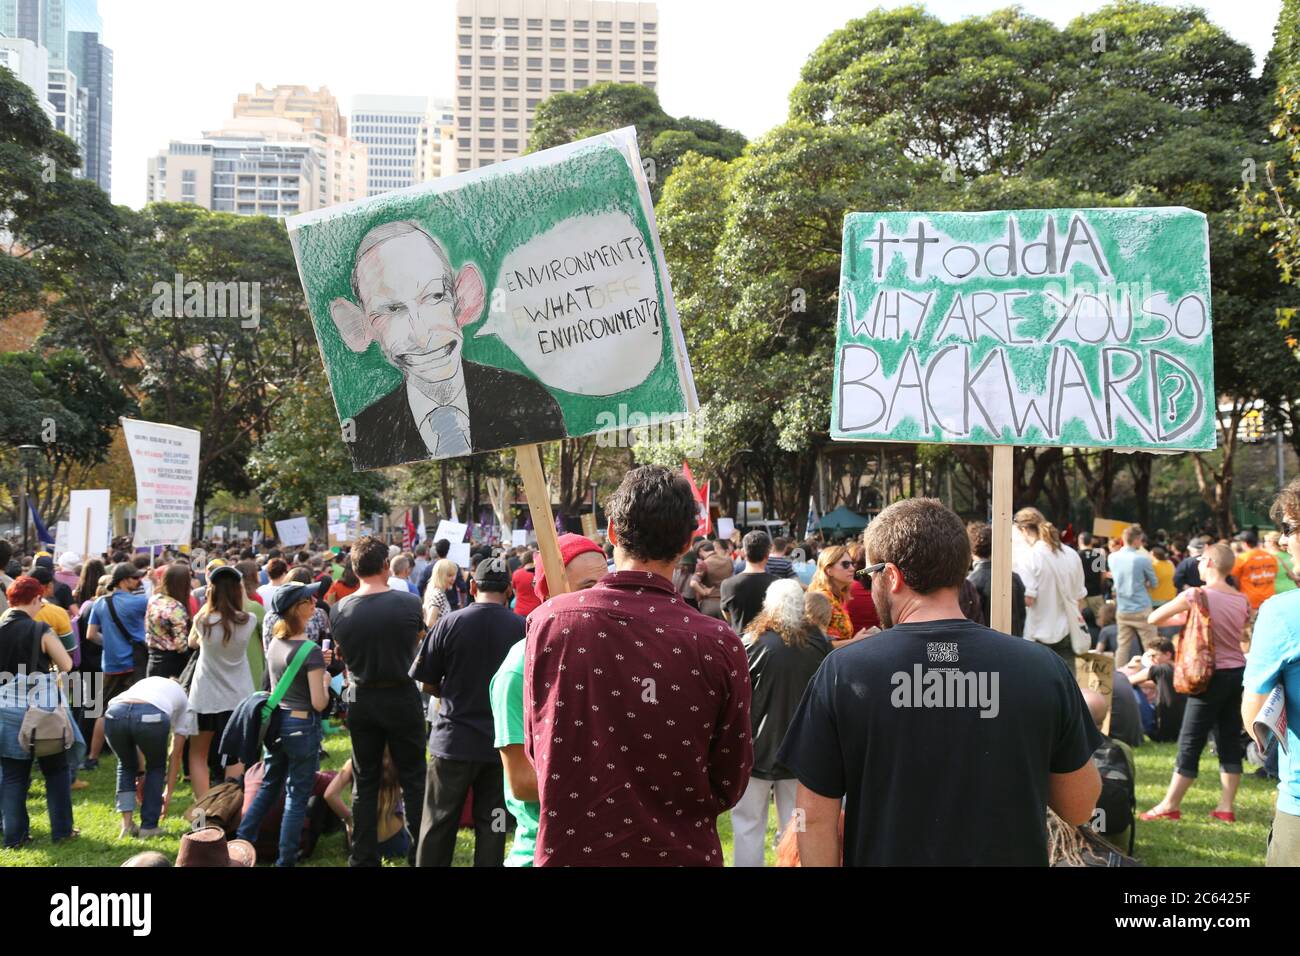 Des manifestants se rassemblent au Belmore Park de Sydney en mars, en mai, et des signes au sujet du Premier ministre libéral australien Tony Abbott y sont également visibles. Banque D'Images